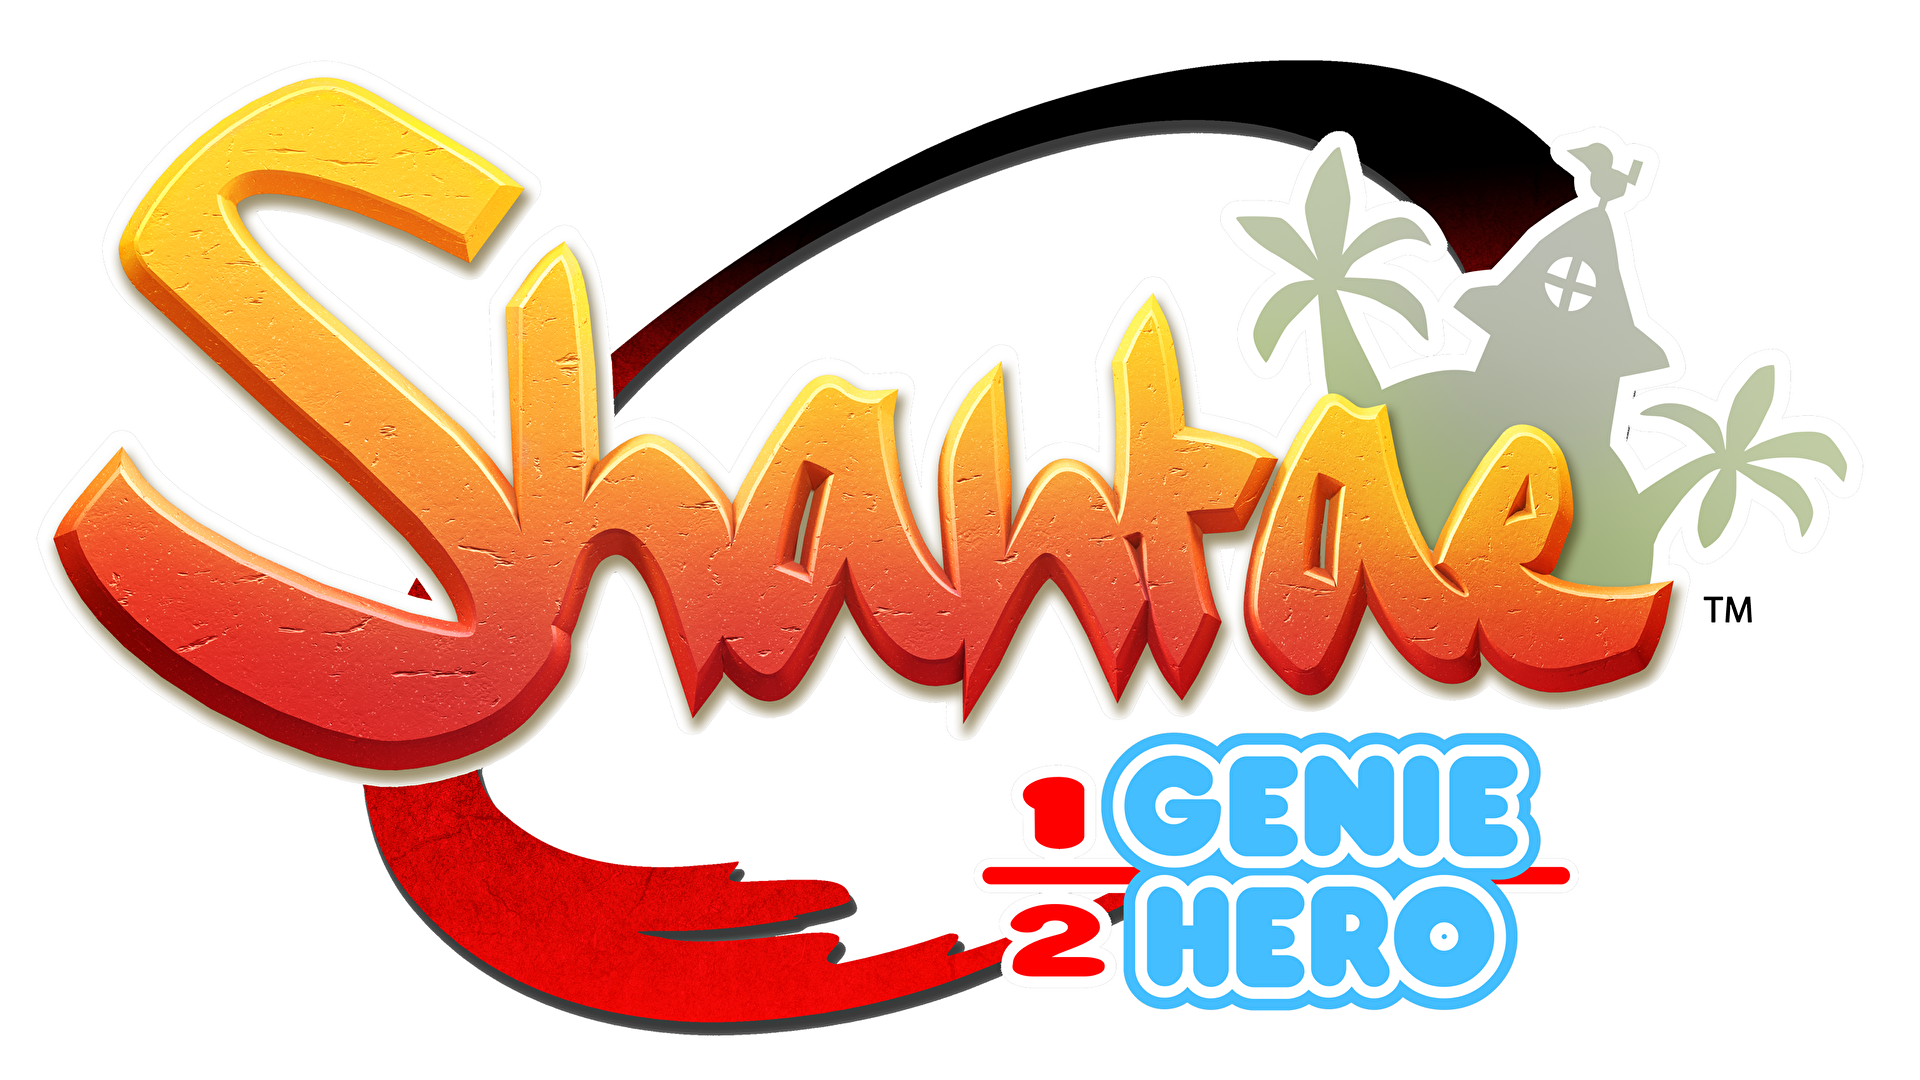 Shantae: Half-Genie Hero Logo